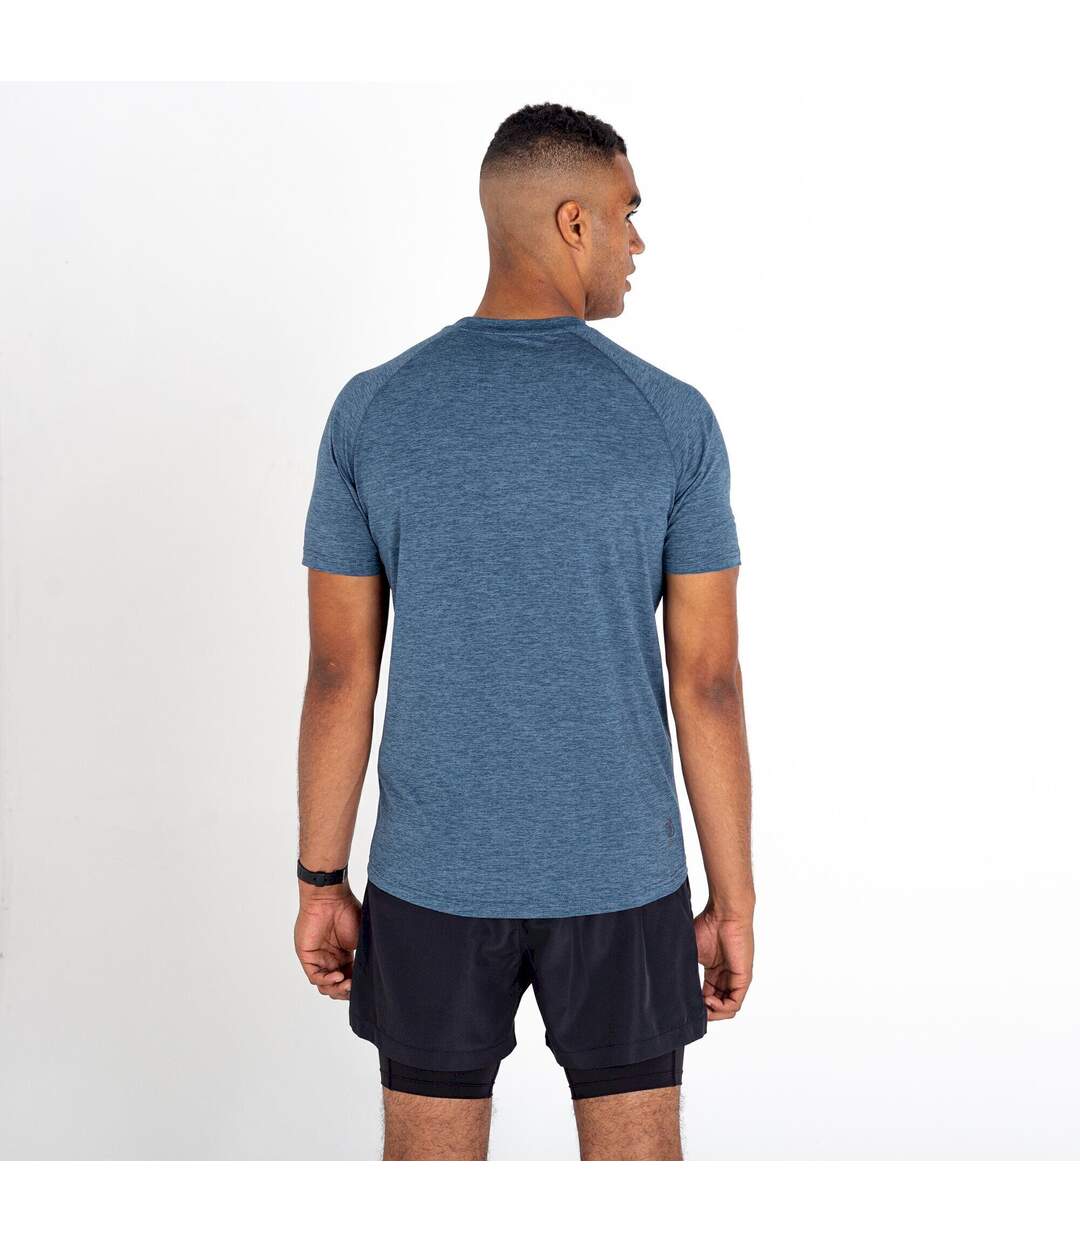 Dare 2B - T-shirt PERSIST - Homme (Gris bleu) - UTRG6887